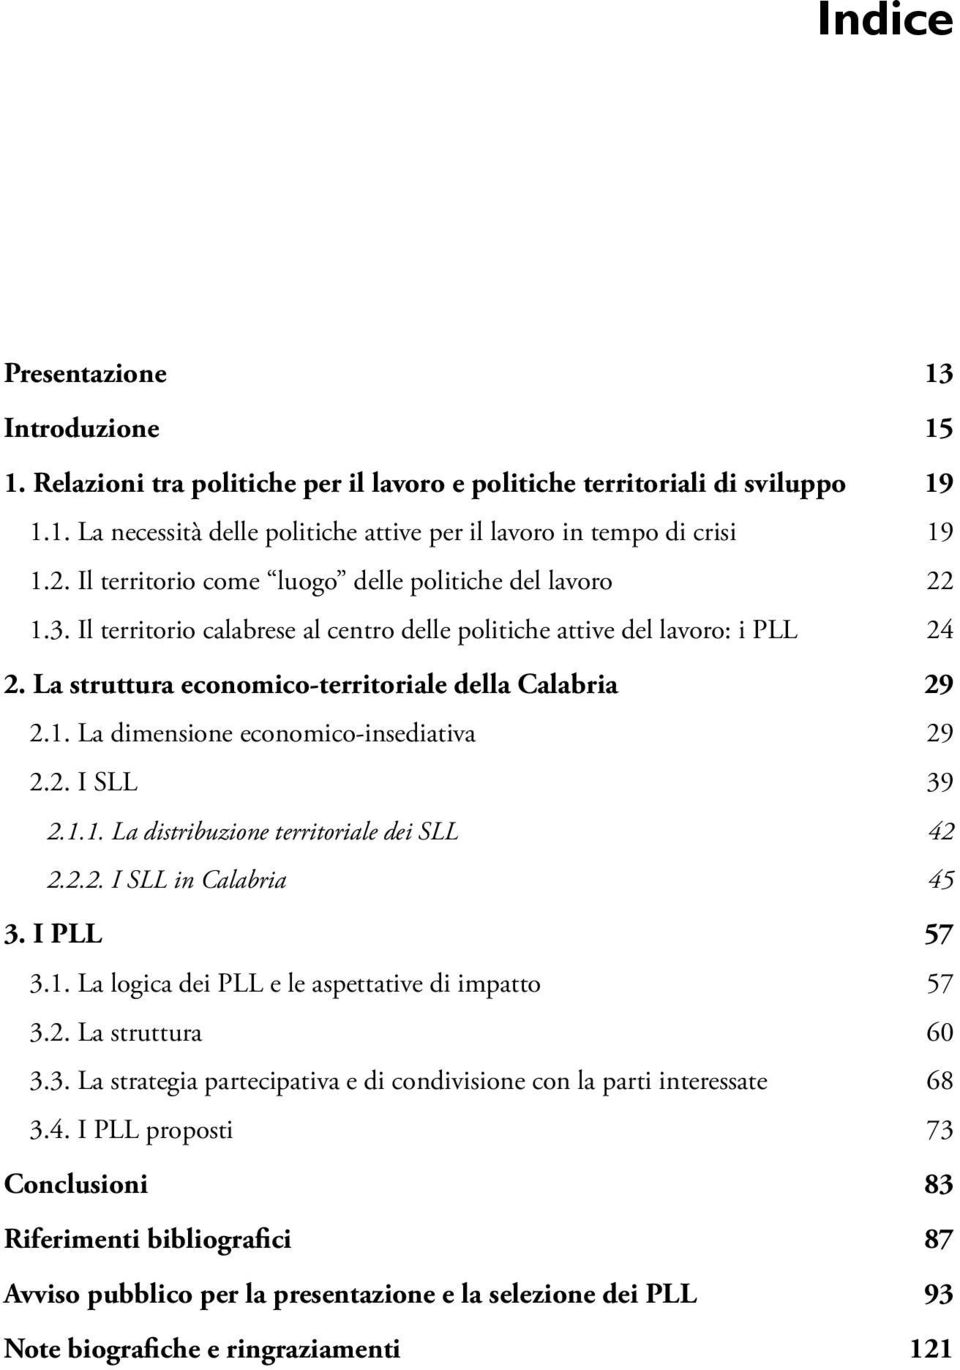 1. La dimensione economico-insediativa 29 2.2. I SLL 39 2.1.1. La distribuzione territoriale dei SLL 42 2.2.2. I SLL in Calabria 45 3. I PLL 57 3.1. La logica dei PLL e le aspettative di impatto 57 3.